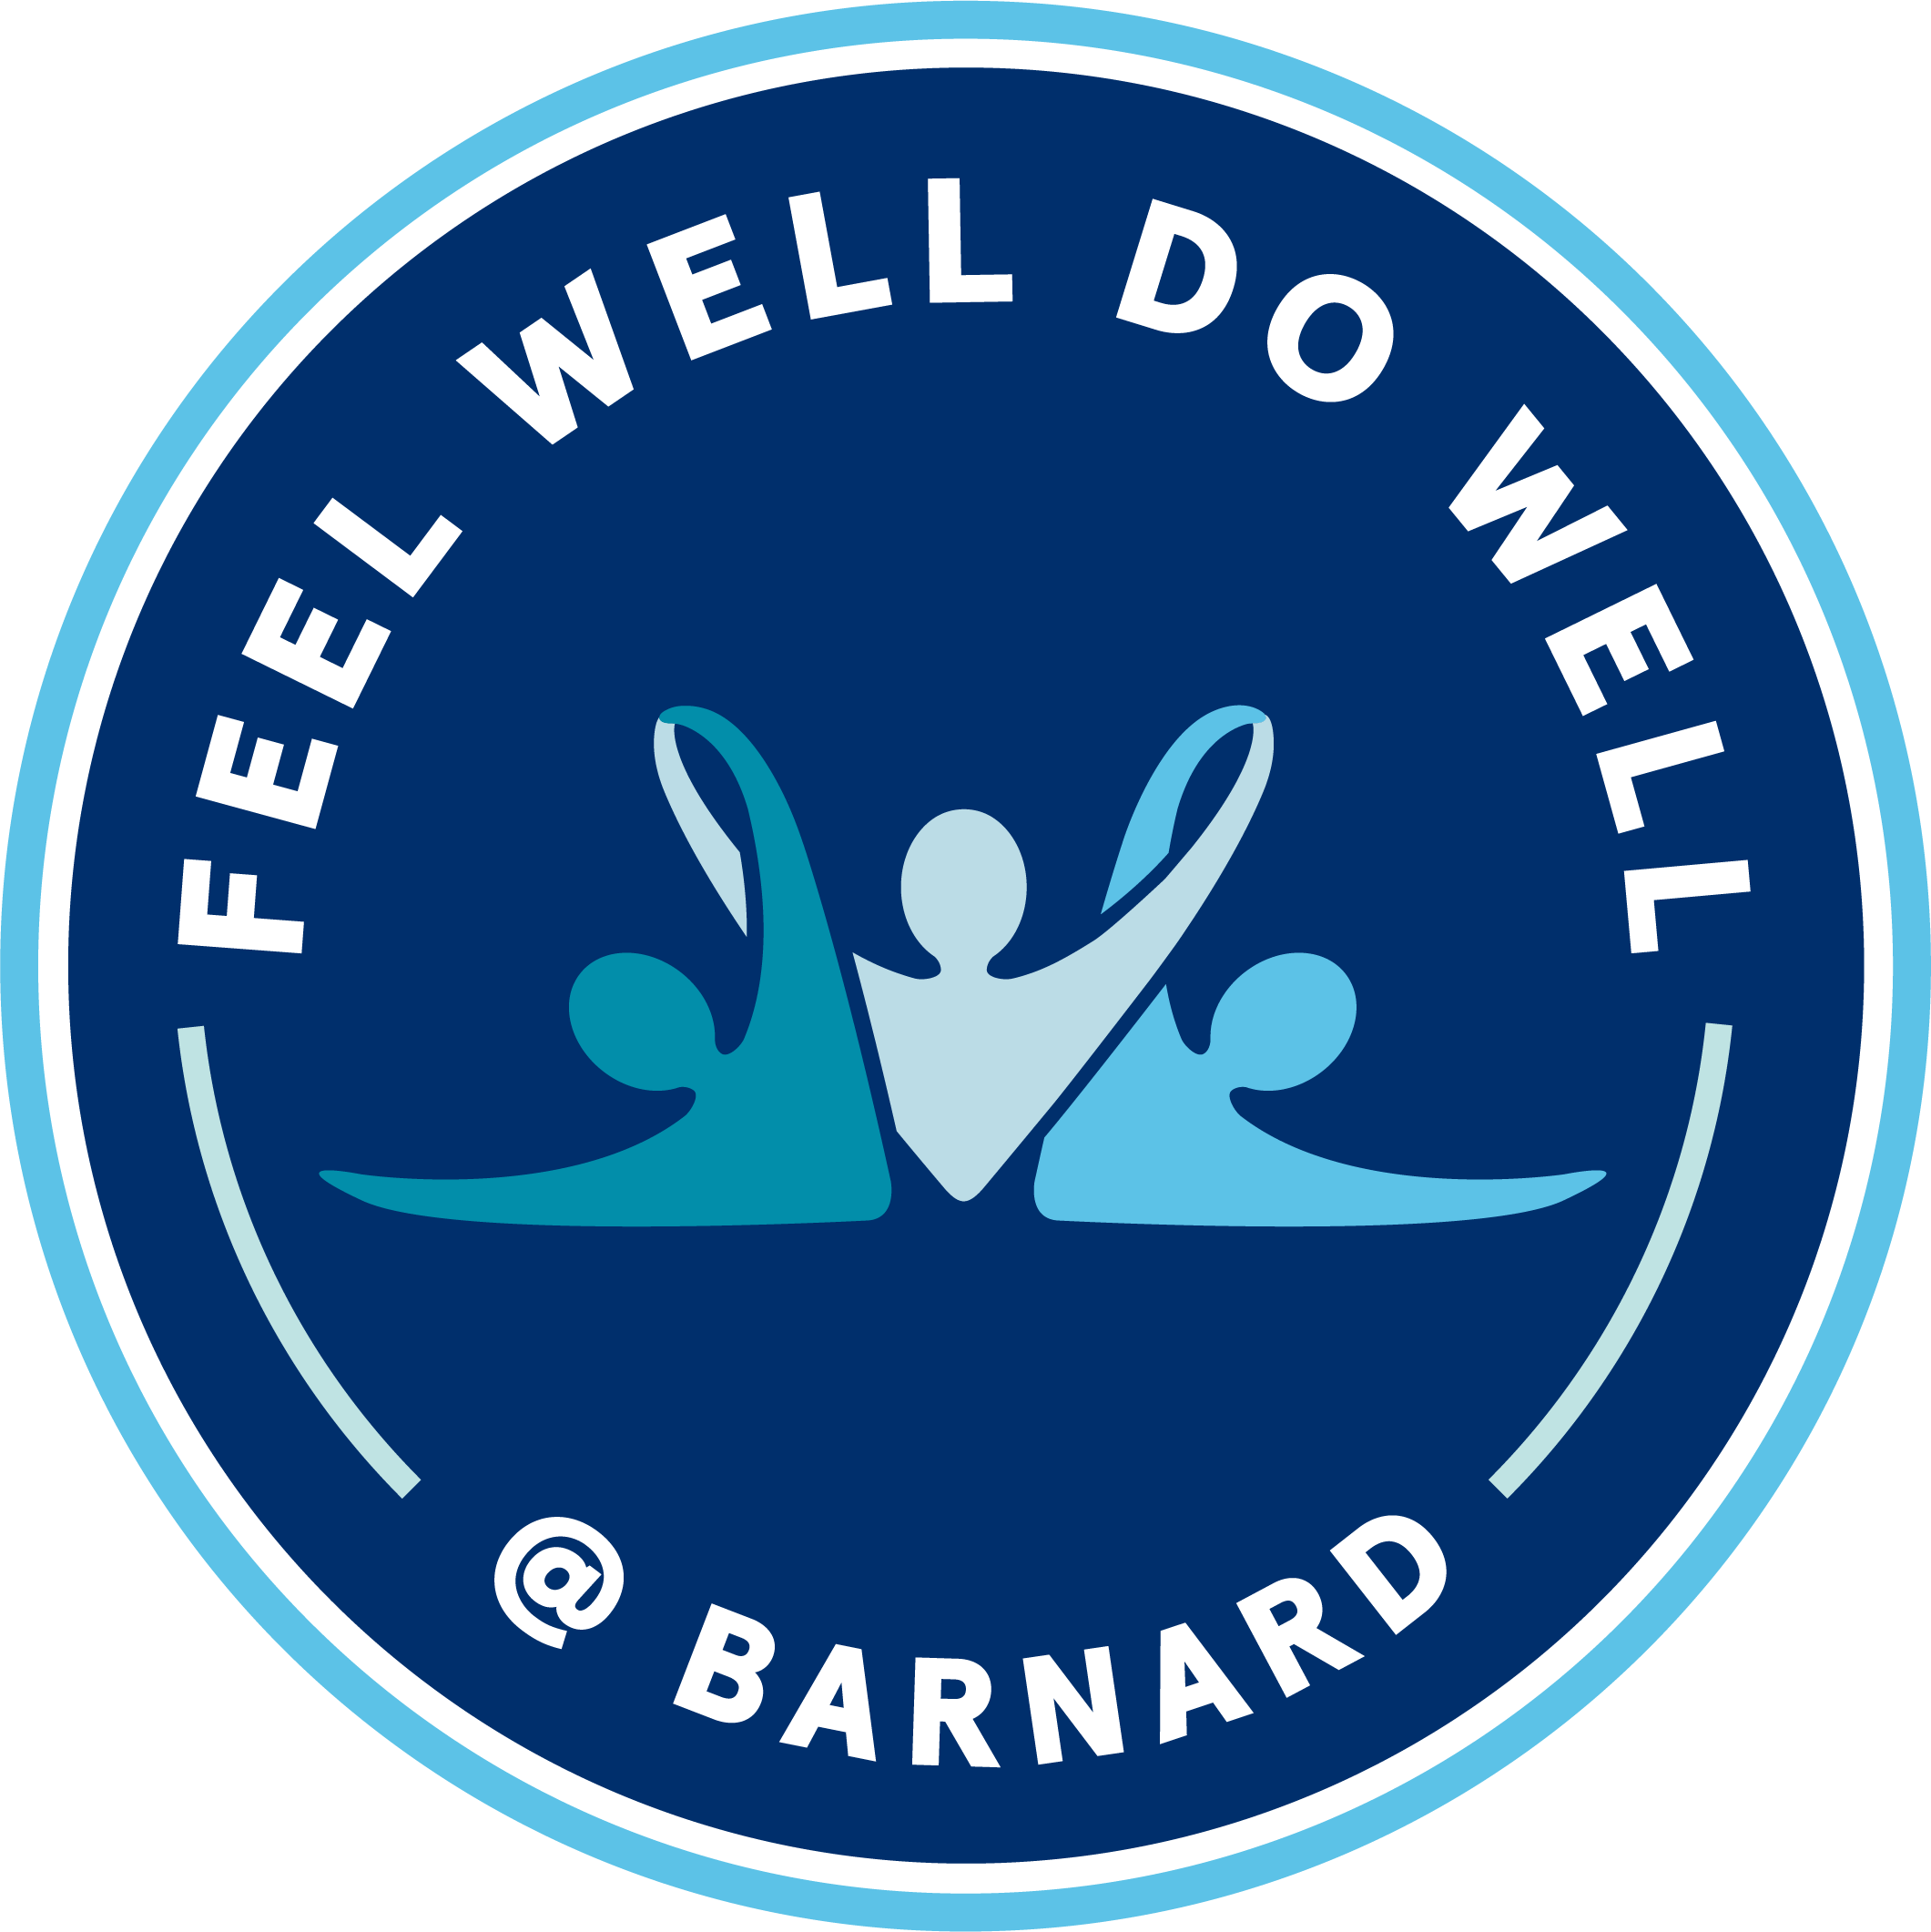 Feel Well Do Well logo